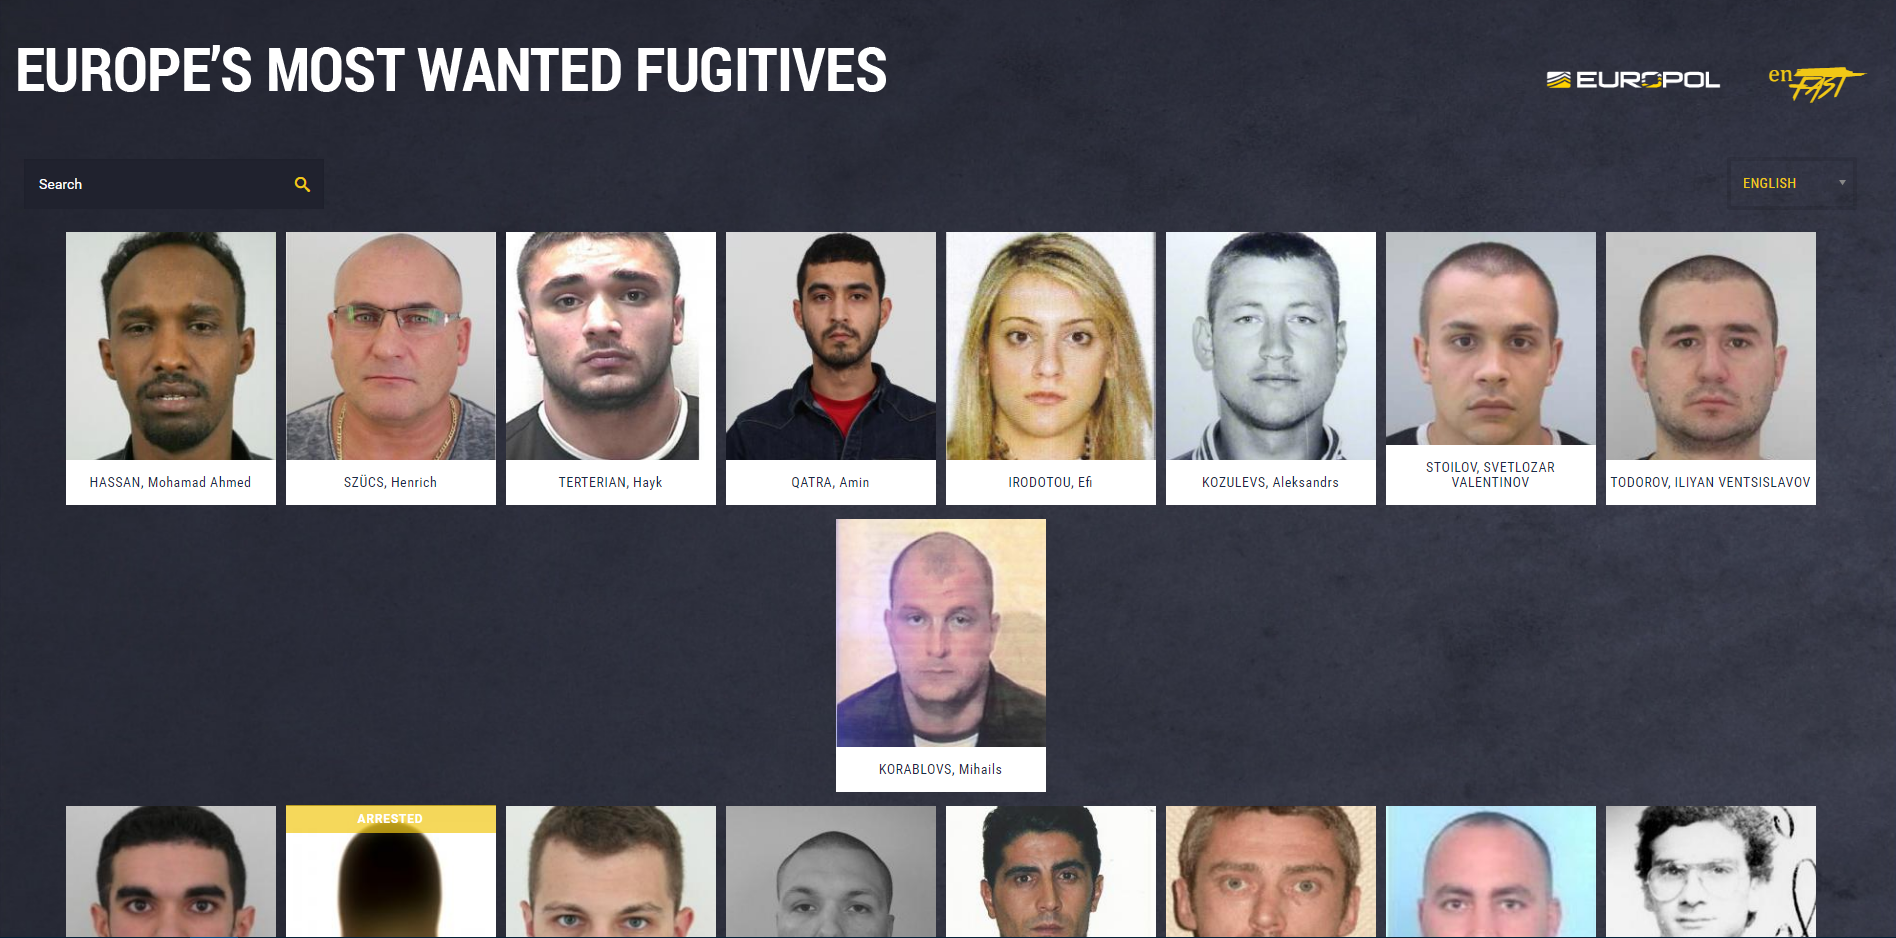 Detinguts vuit dels fugitius més buscats a Europa gràcies a la col·laboració ciutadana